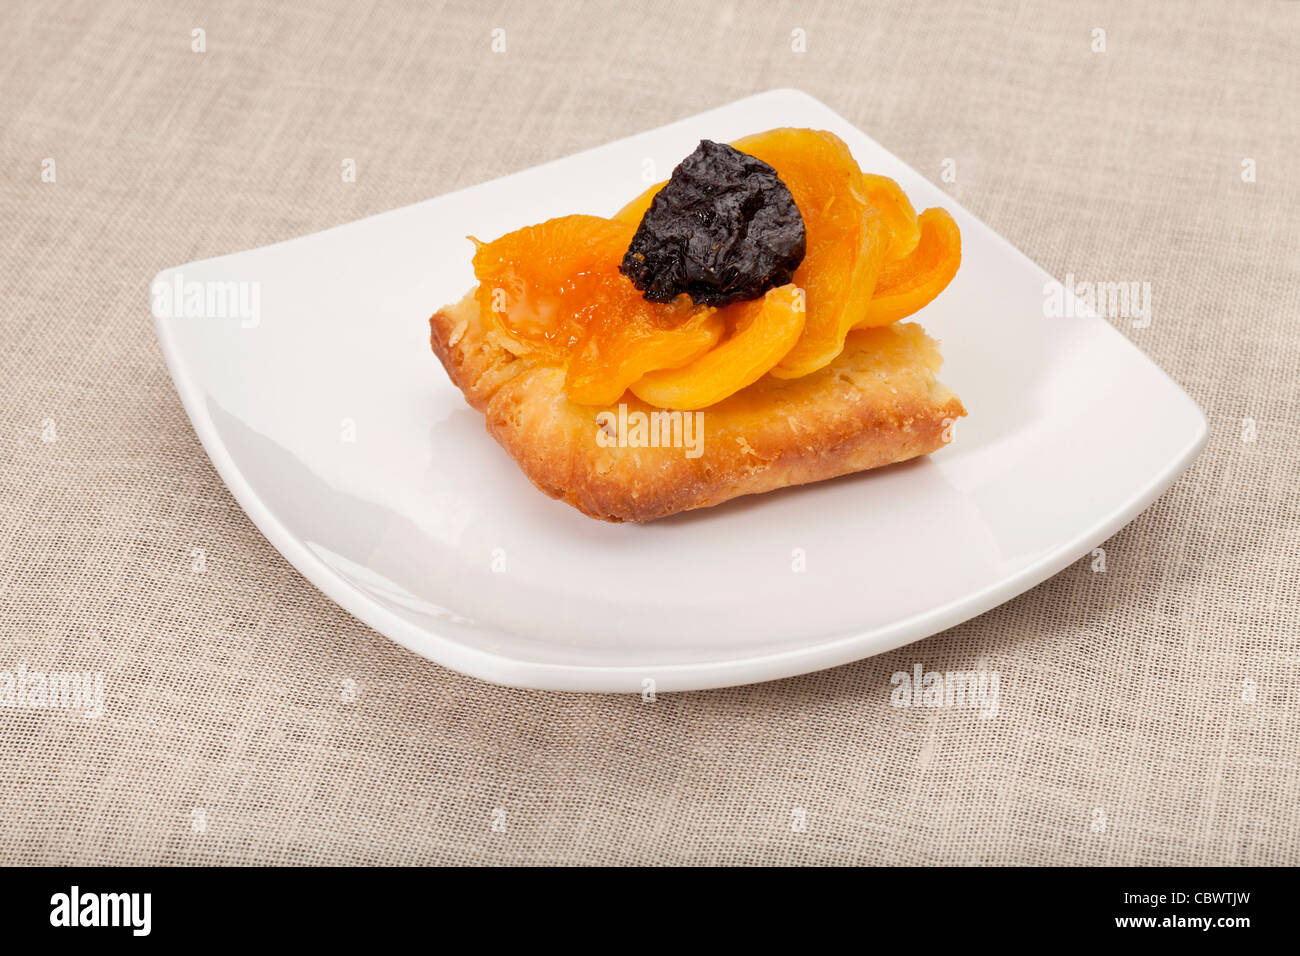 Une partie de tarte aux fruits maison abricot et prune sur une plaque carrée blanche nappe contre Banque D'Images